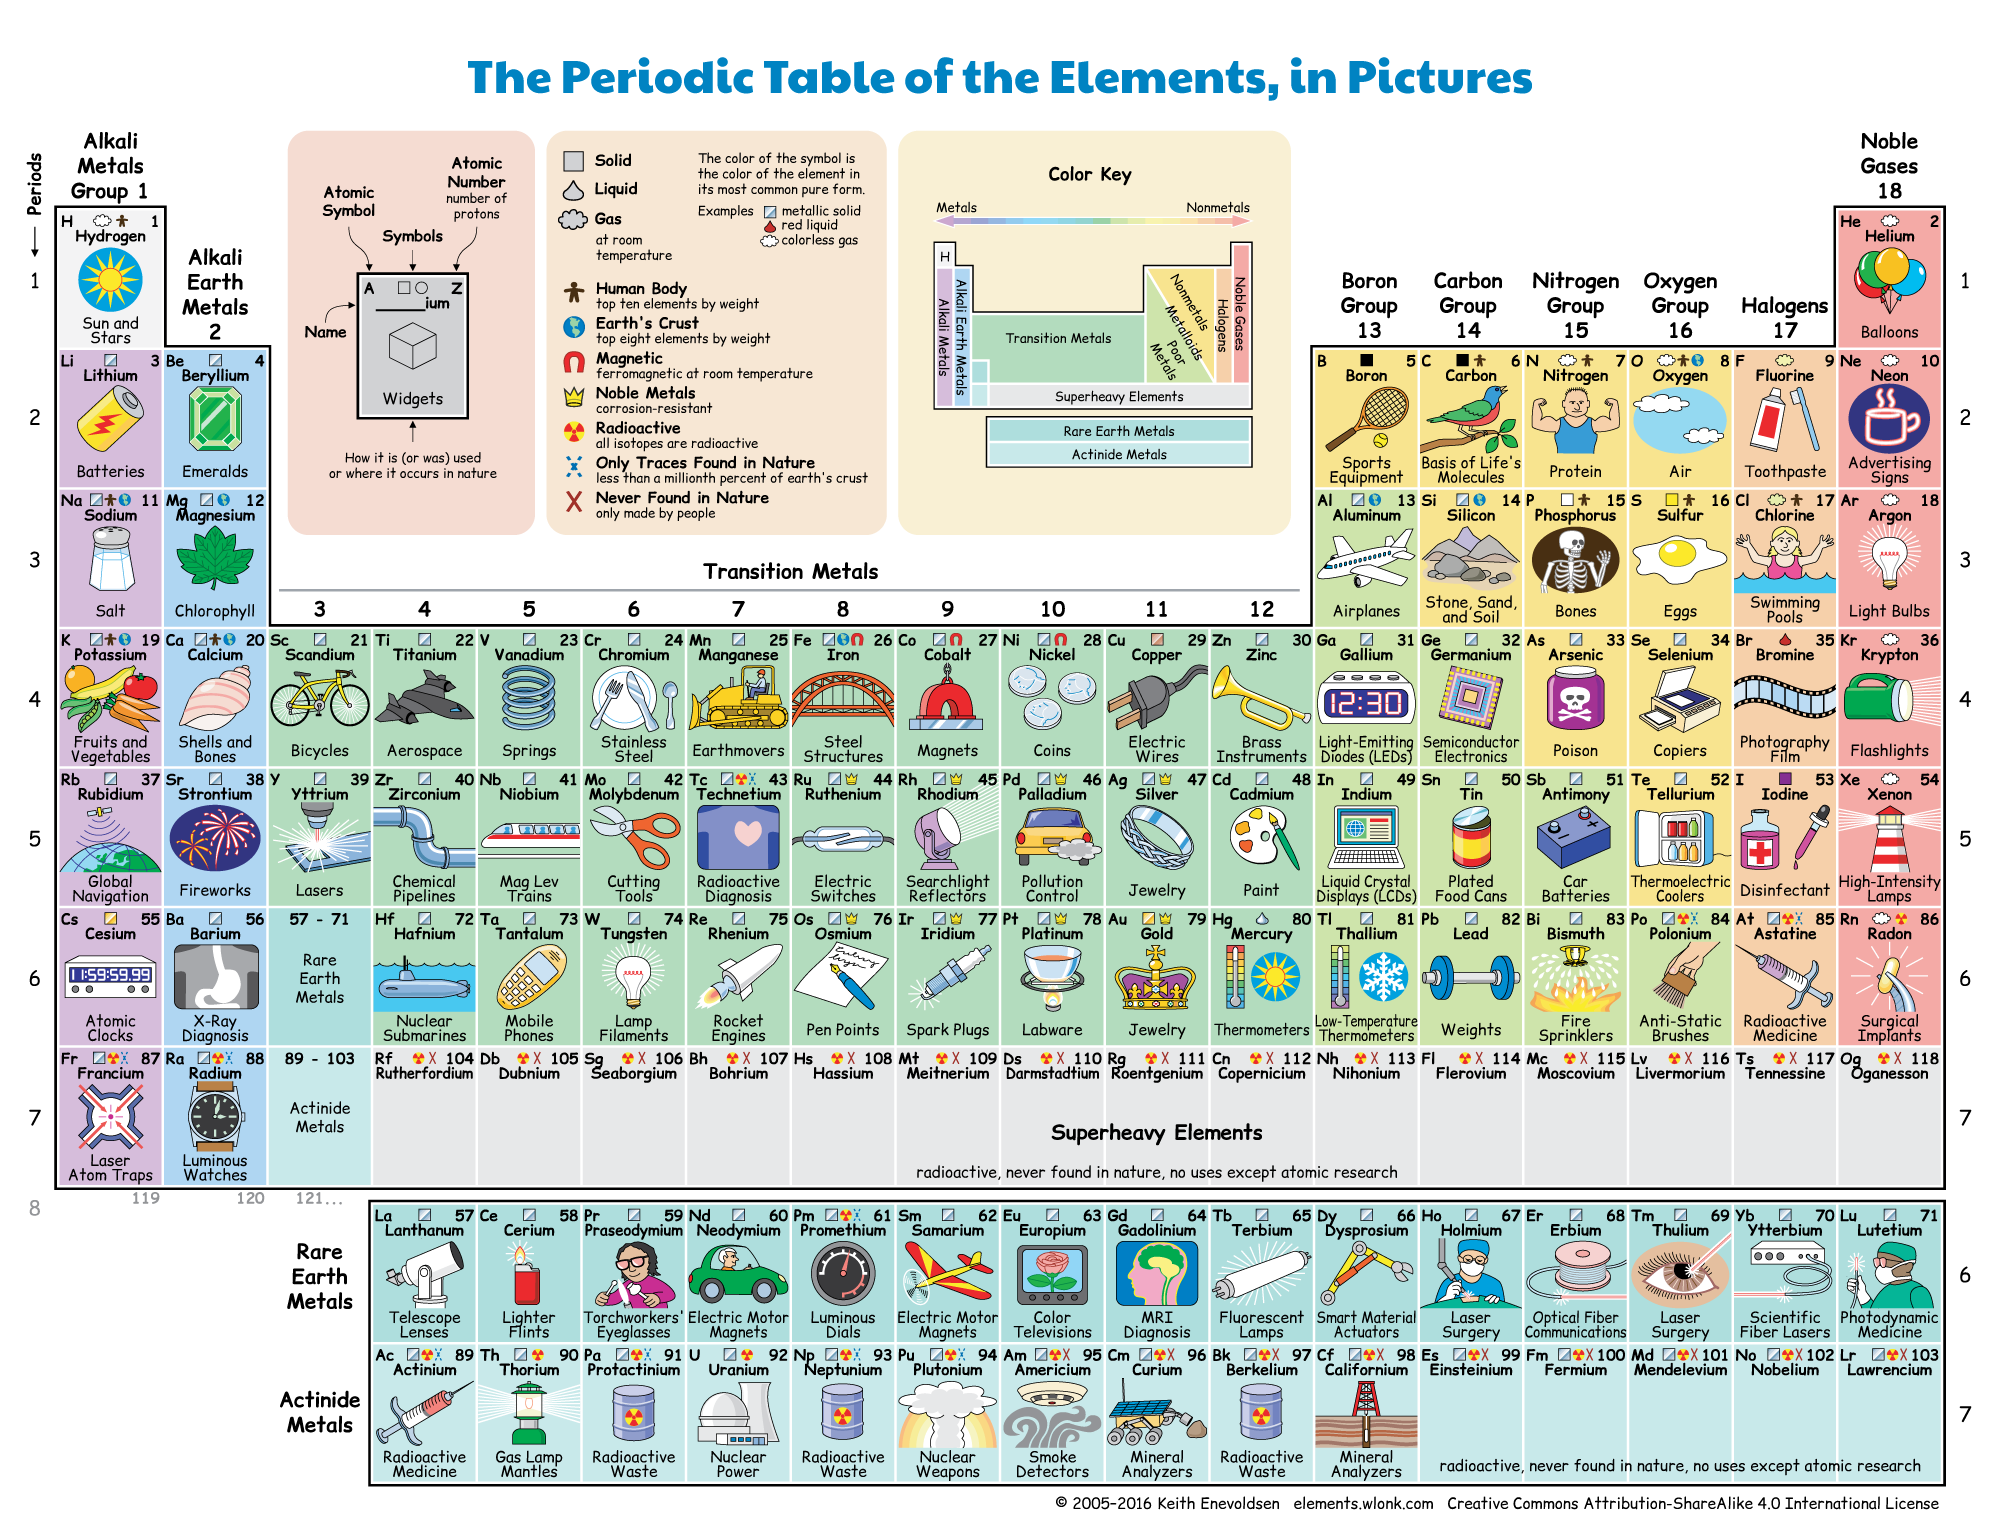 Alcalinos en la tabla periodica